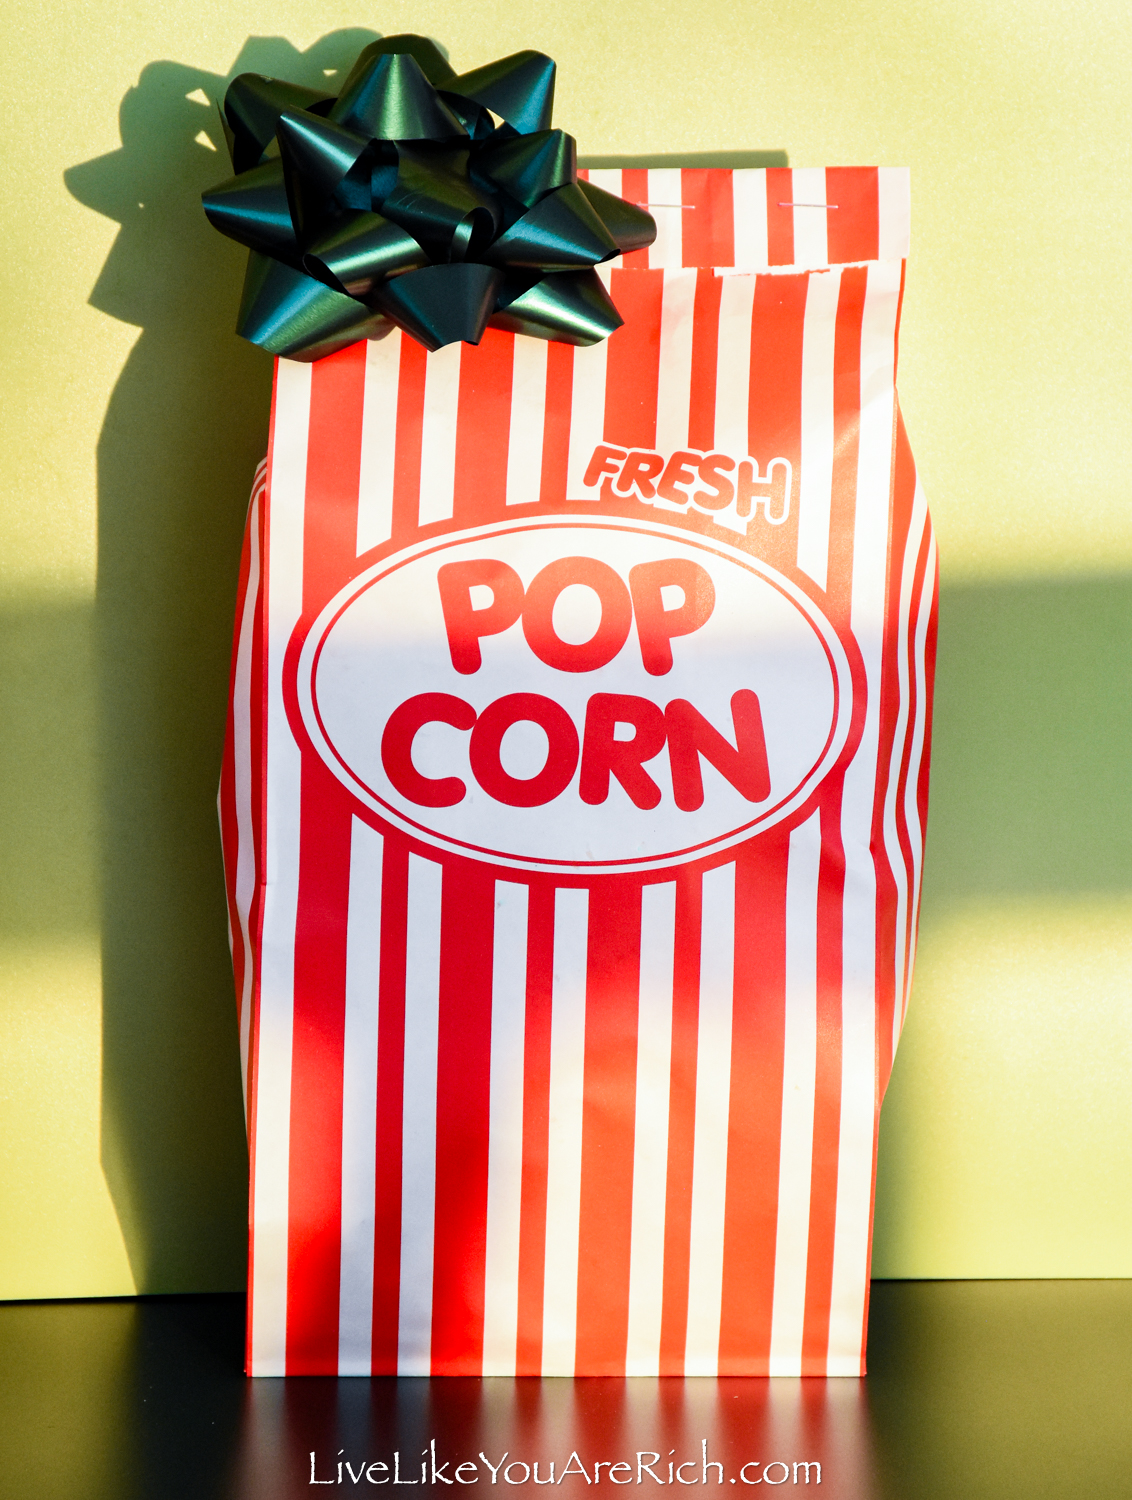 Neighbor Christmas Gift: Buttered Popcorn